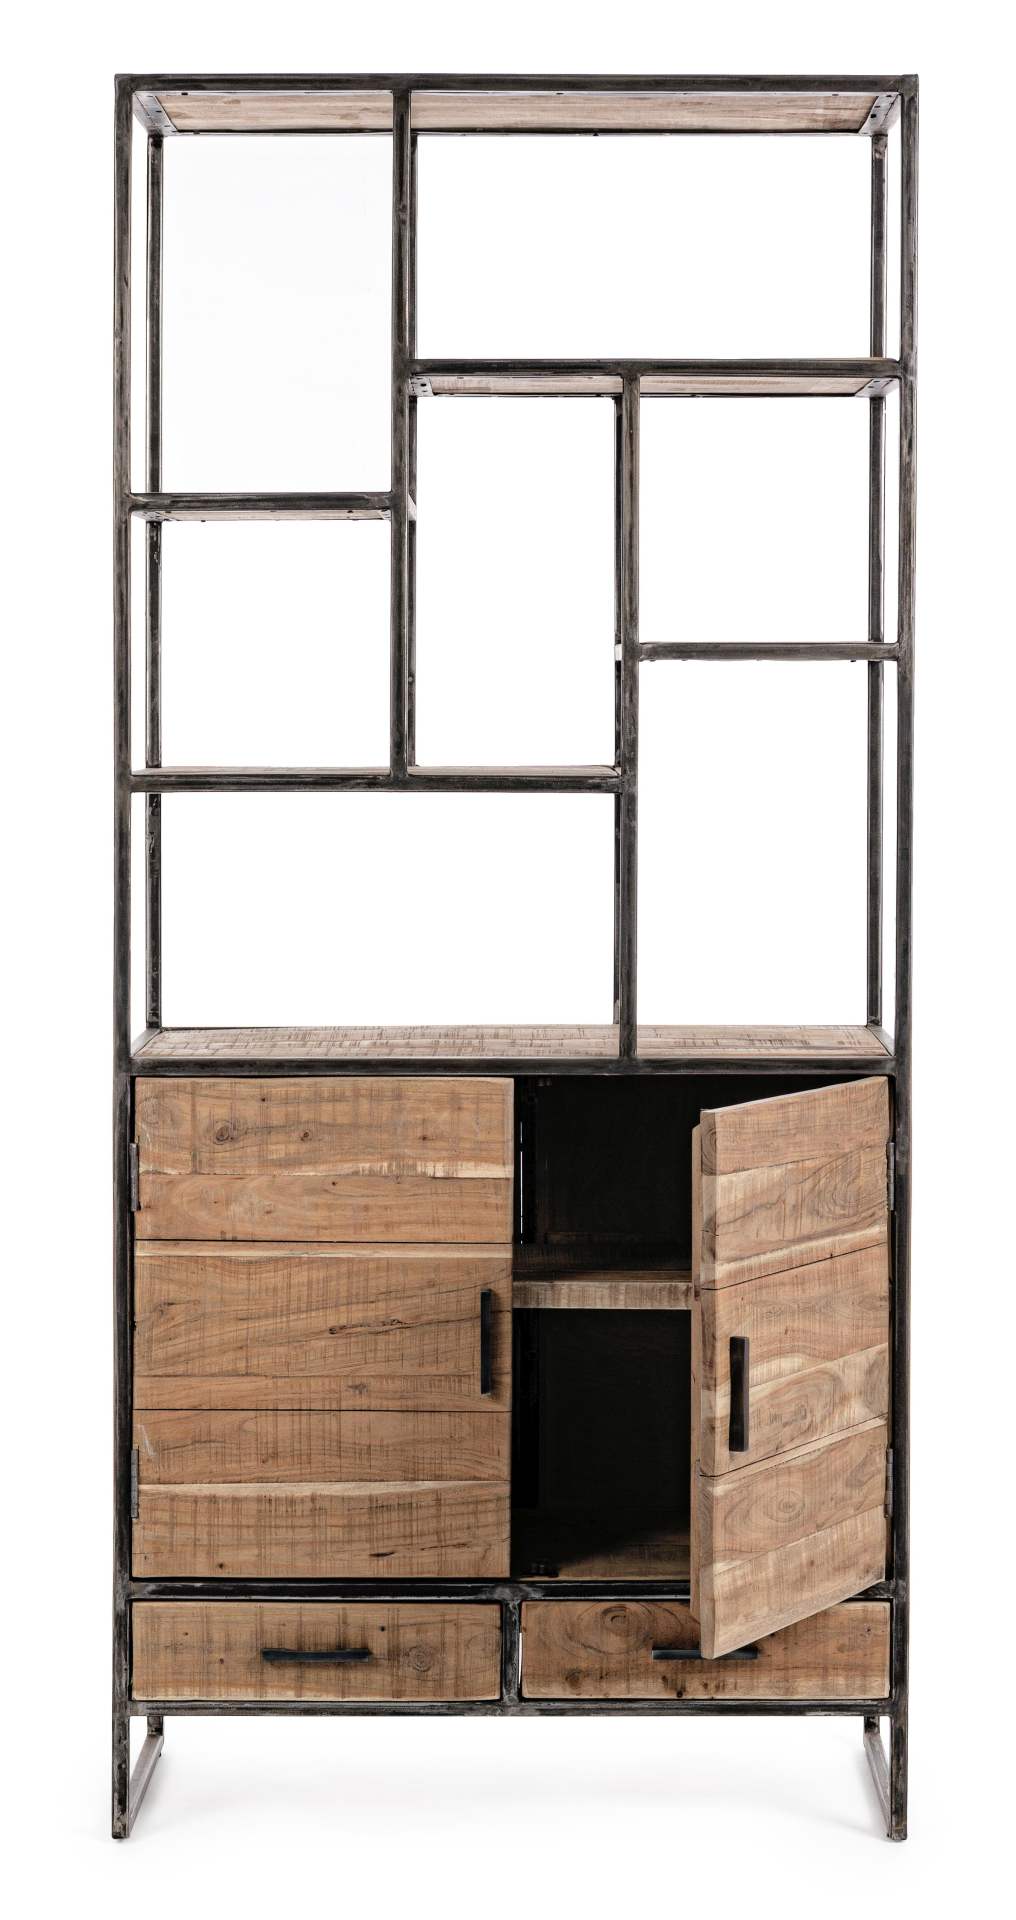 Das Bücherregal Elmer überzeugt mit seinem klassischen Design. Gefertigt wurde es aus Akazienholz, welches einen natürlichen Farbton besitzt. Das Gestell ist aus Metall und hat eine schwarze Farbe. Das Bücherregal verfügt über zwei Schubladen und zwei Tür